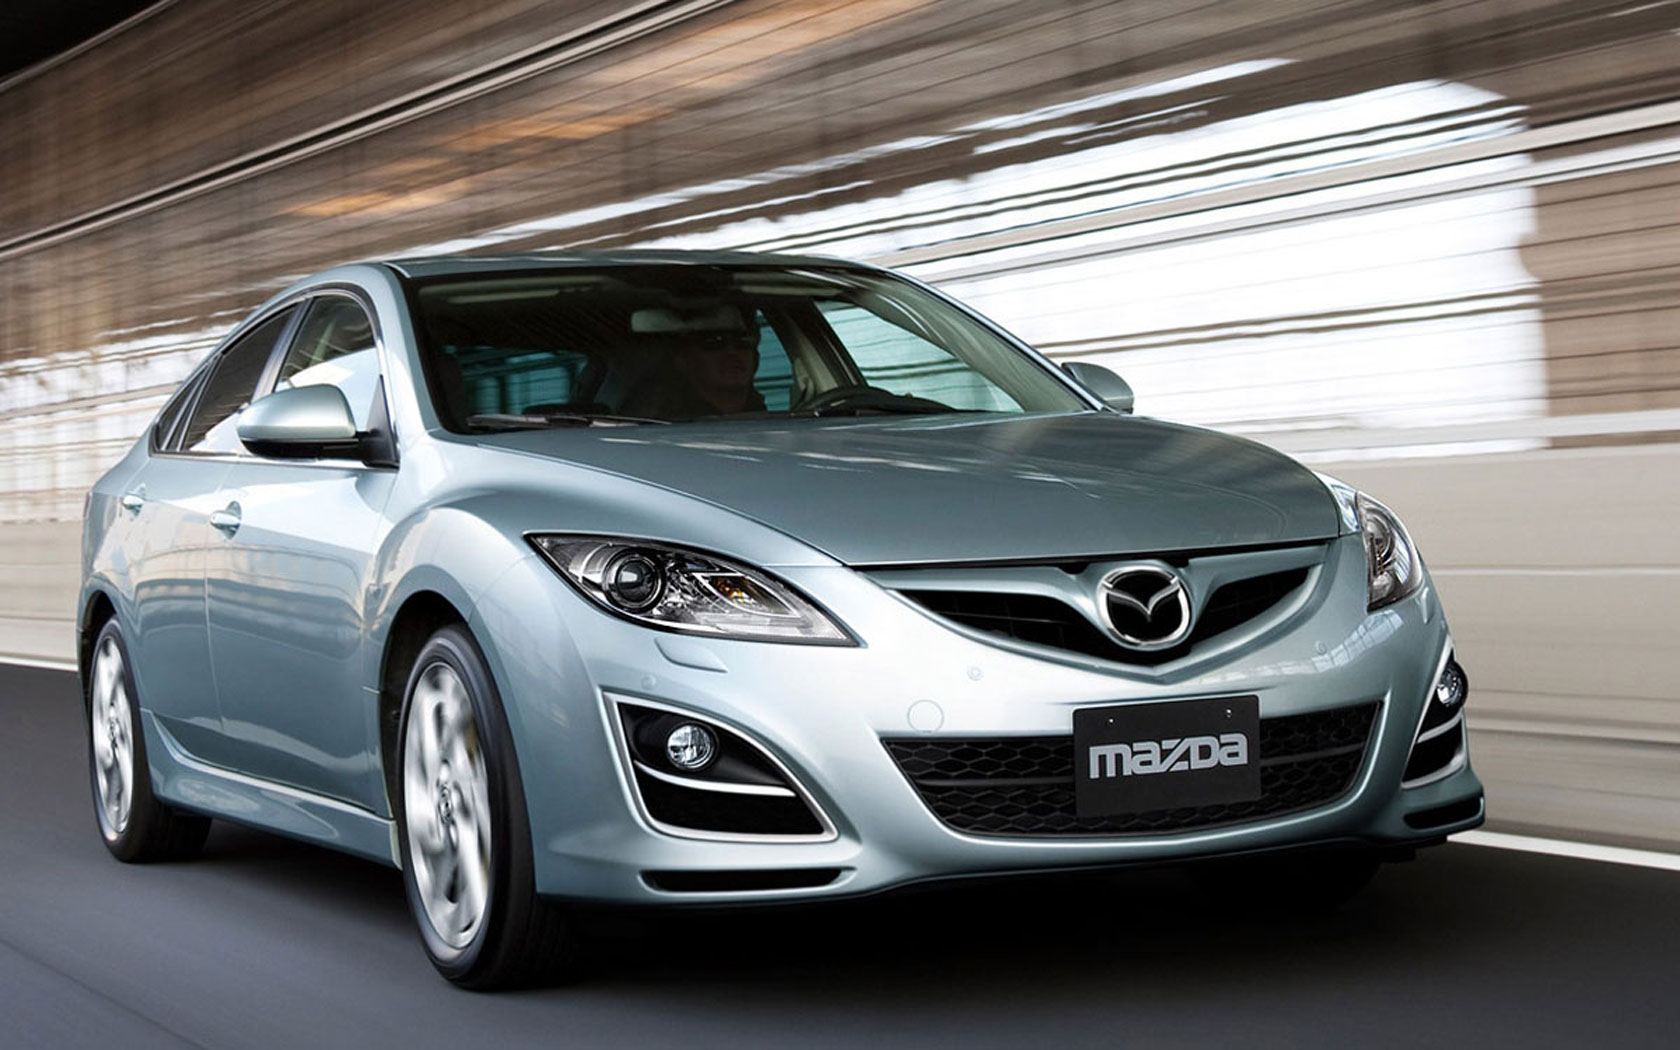  Mazda 6 (2010-2012)